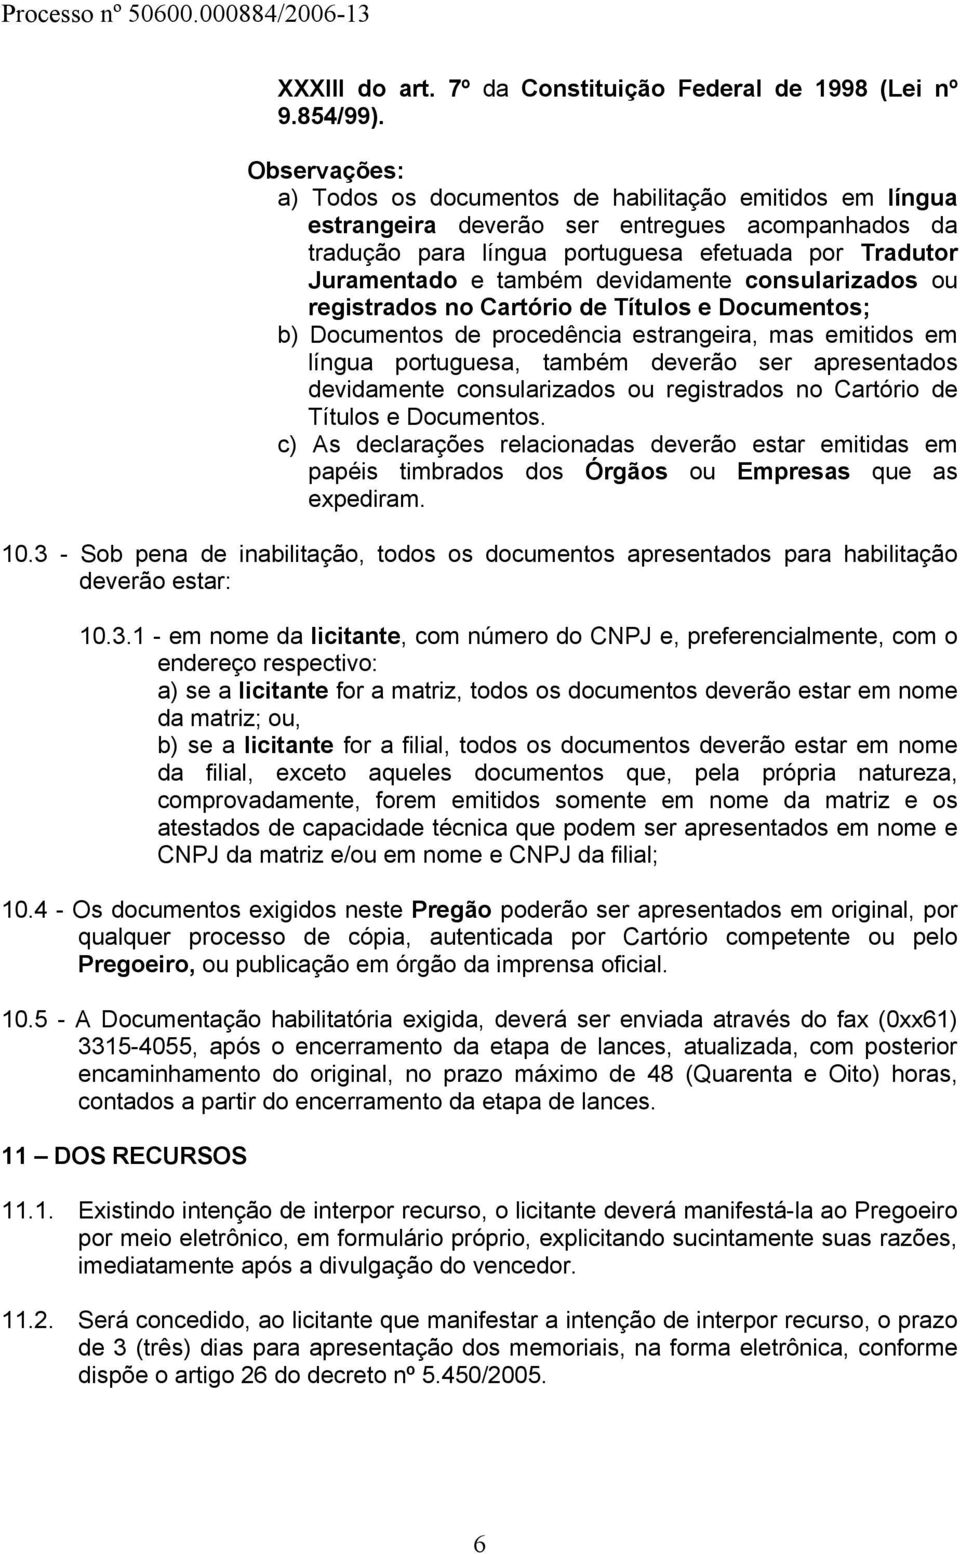 devidamente consularizados ou registrados no Cartório de Títulos e Documentos; b) Documentos de procedência estrangeira, mas emitidos em língua portuguesa, também deverão ser apresentados devidamente